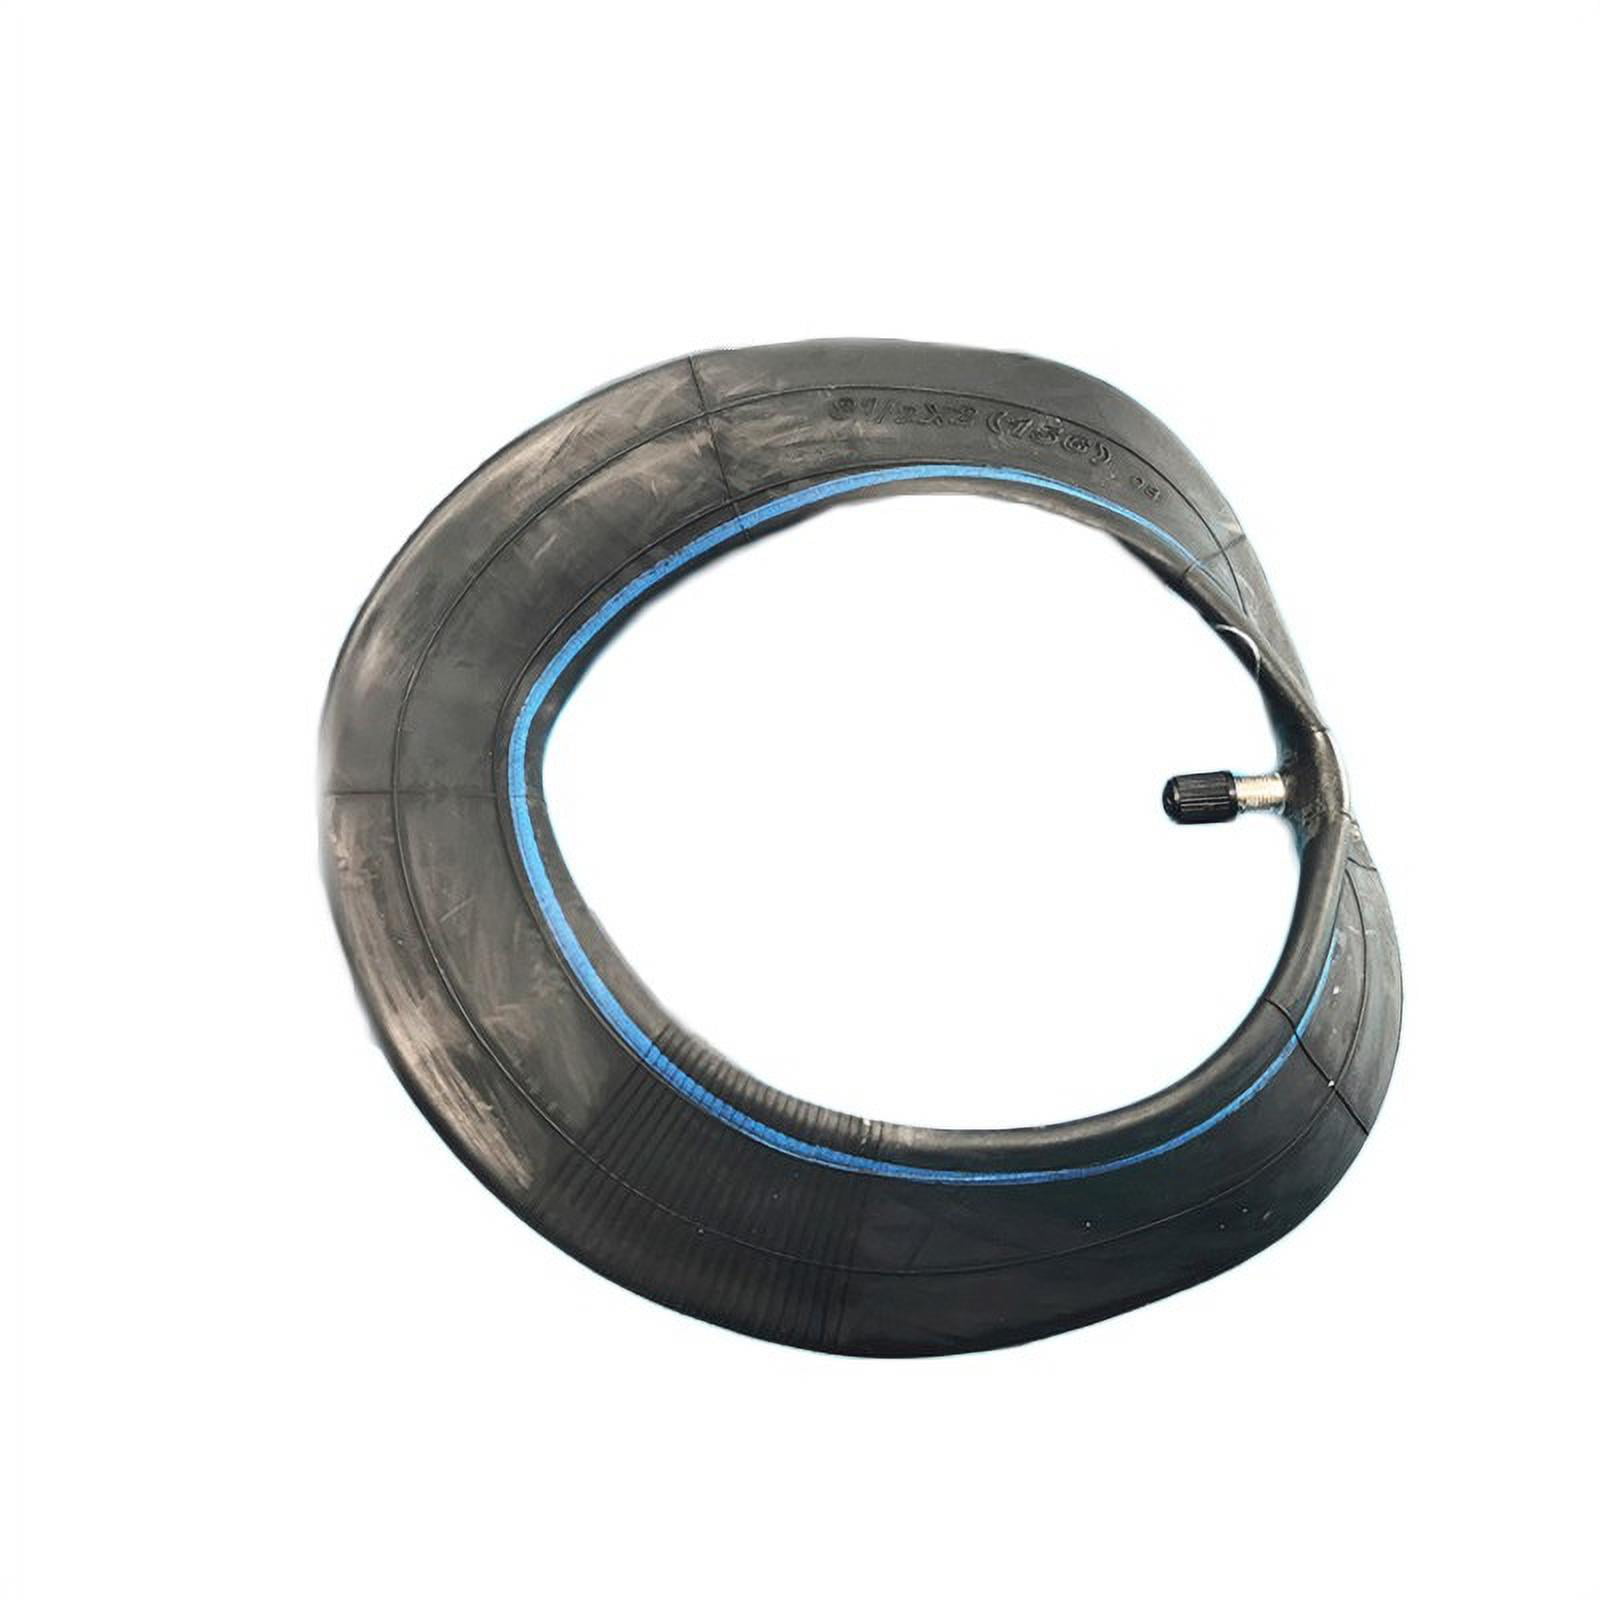 Wheel Inner Tube Tyre For Xiaomi M365 Pro 8.5x2 50-156 E-bike Attachment Part 